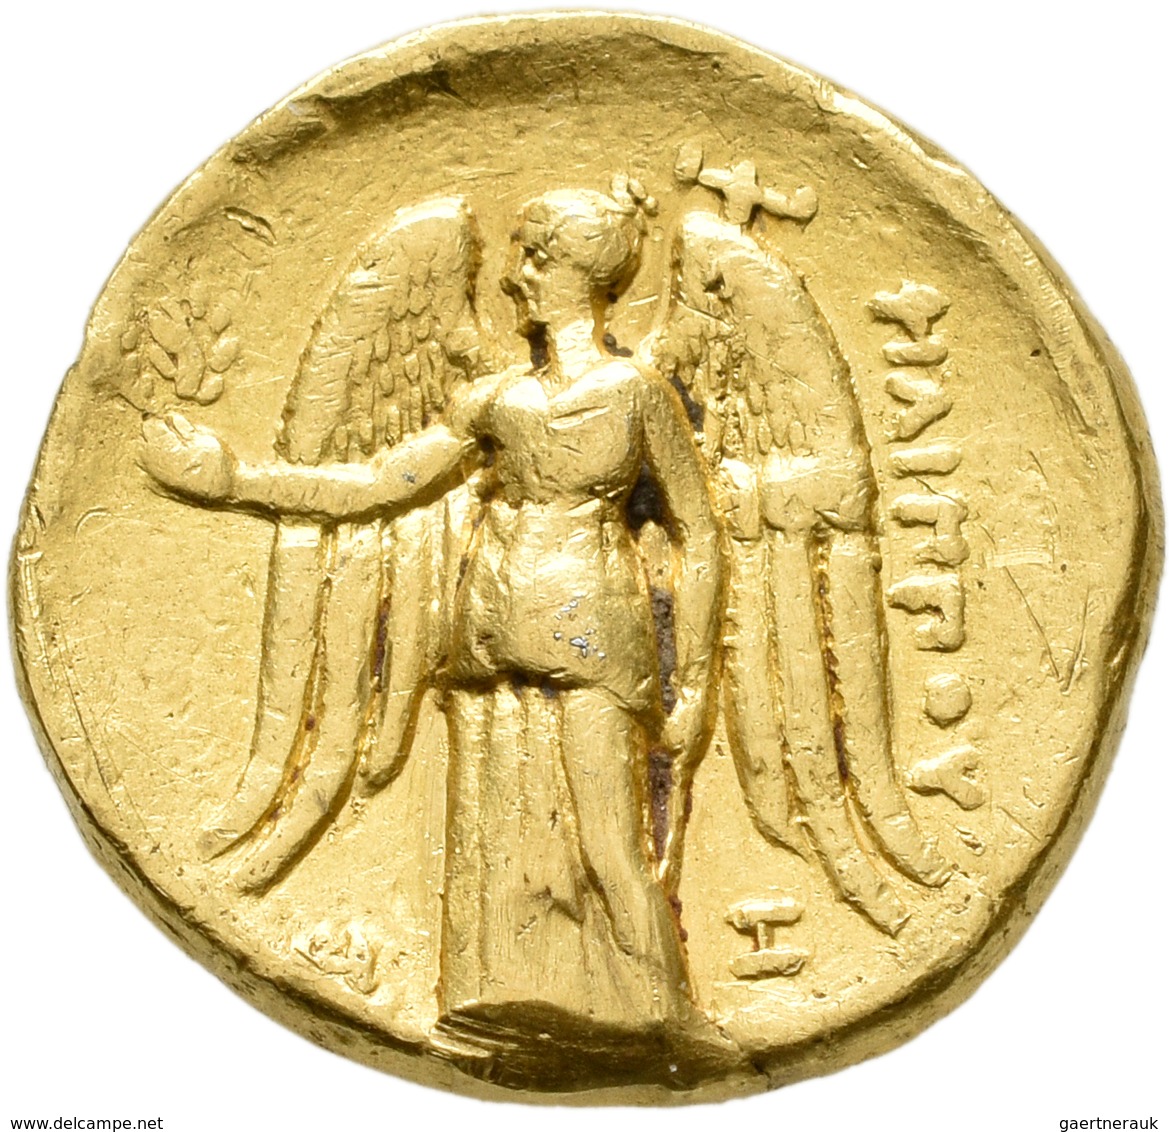 Makedonien - Könige: Philipp III. Arrchidaios 323-317 V.Chr: GOLD Stater, "Arados"? 323-316 V. C., V - Grecques